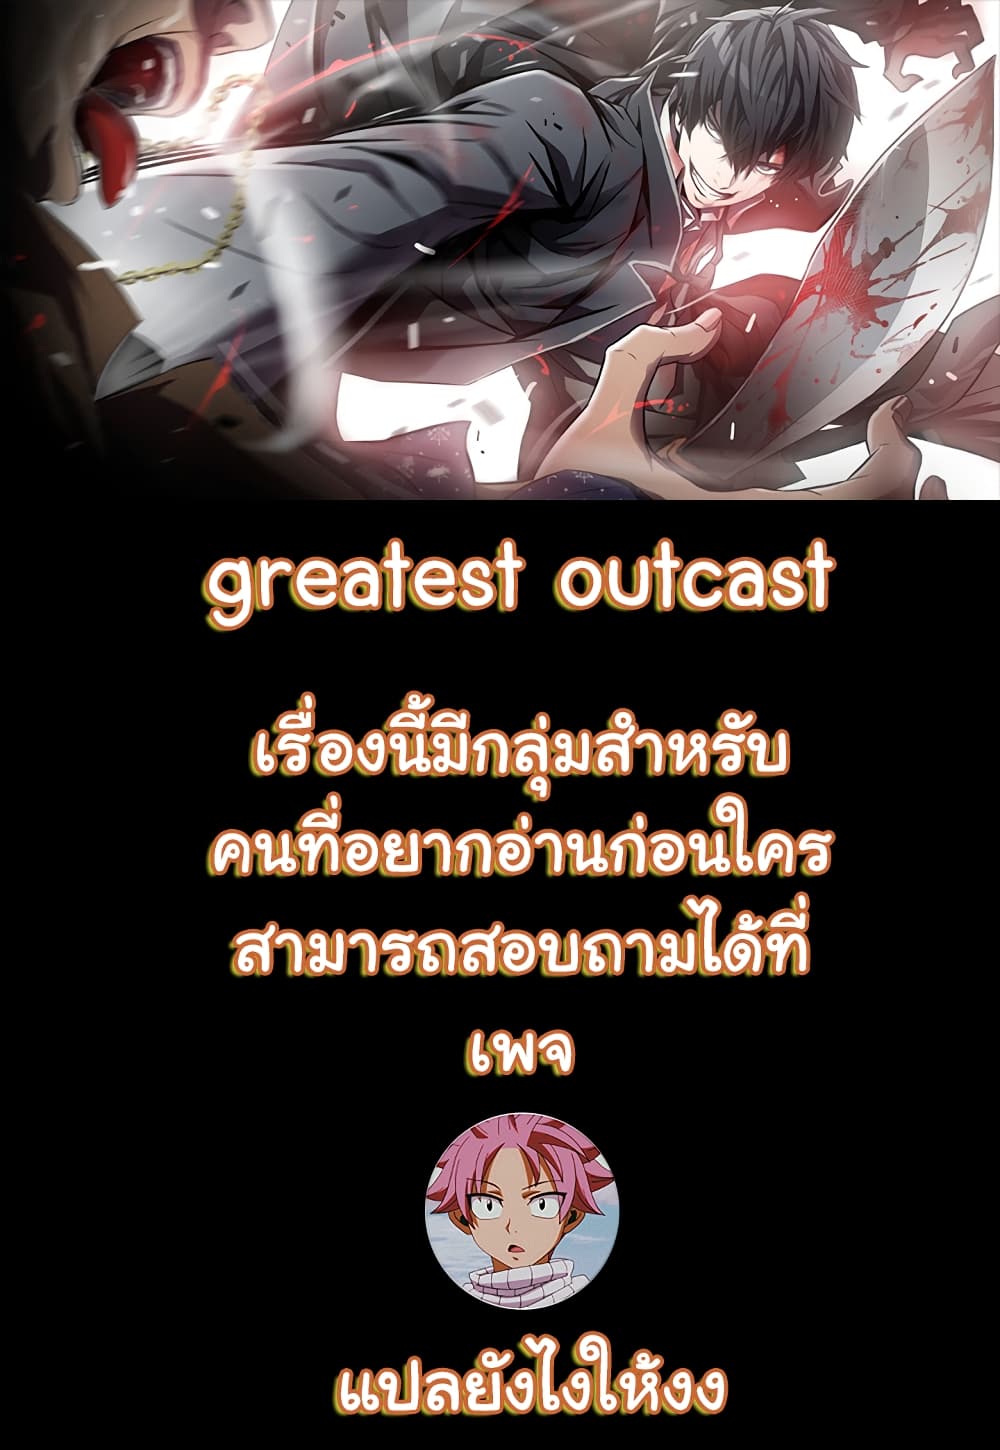 Greatest Outcast 7 01